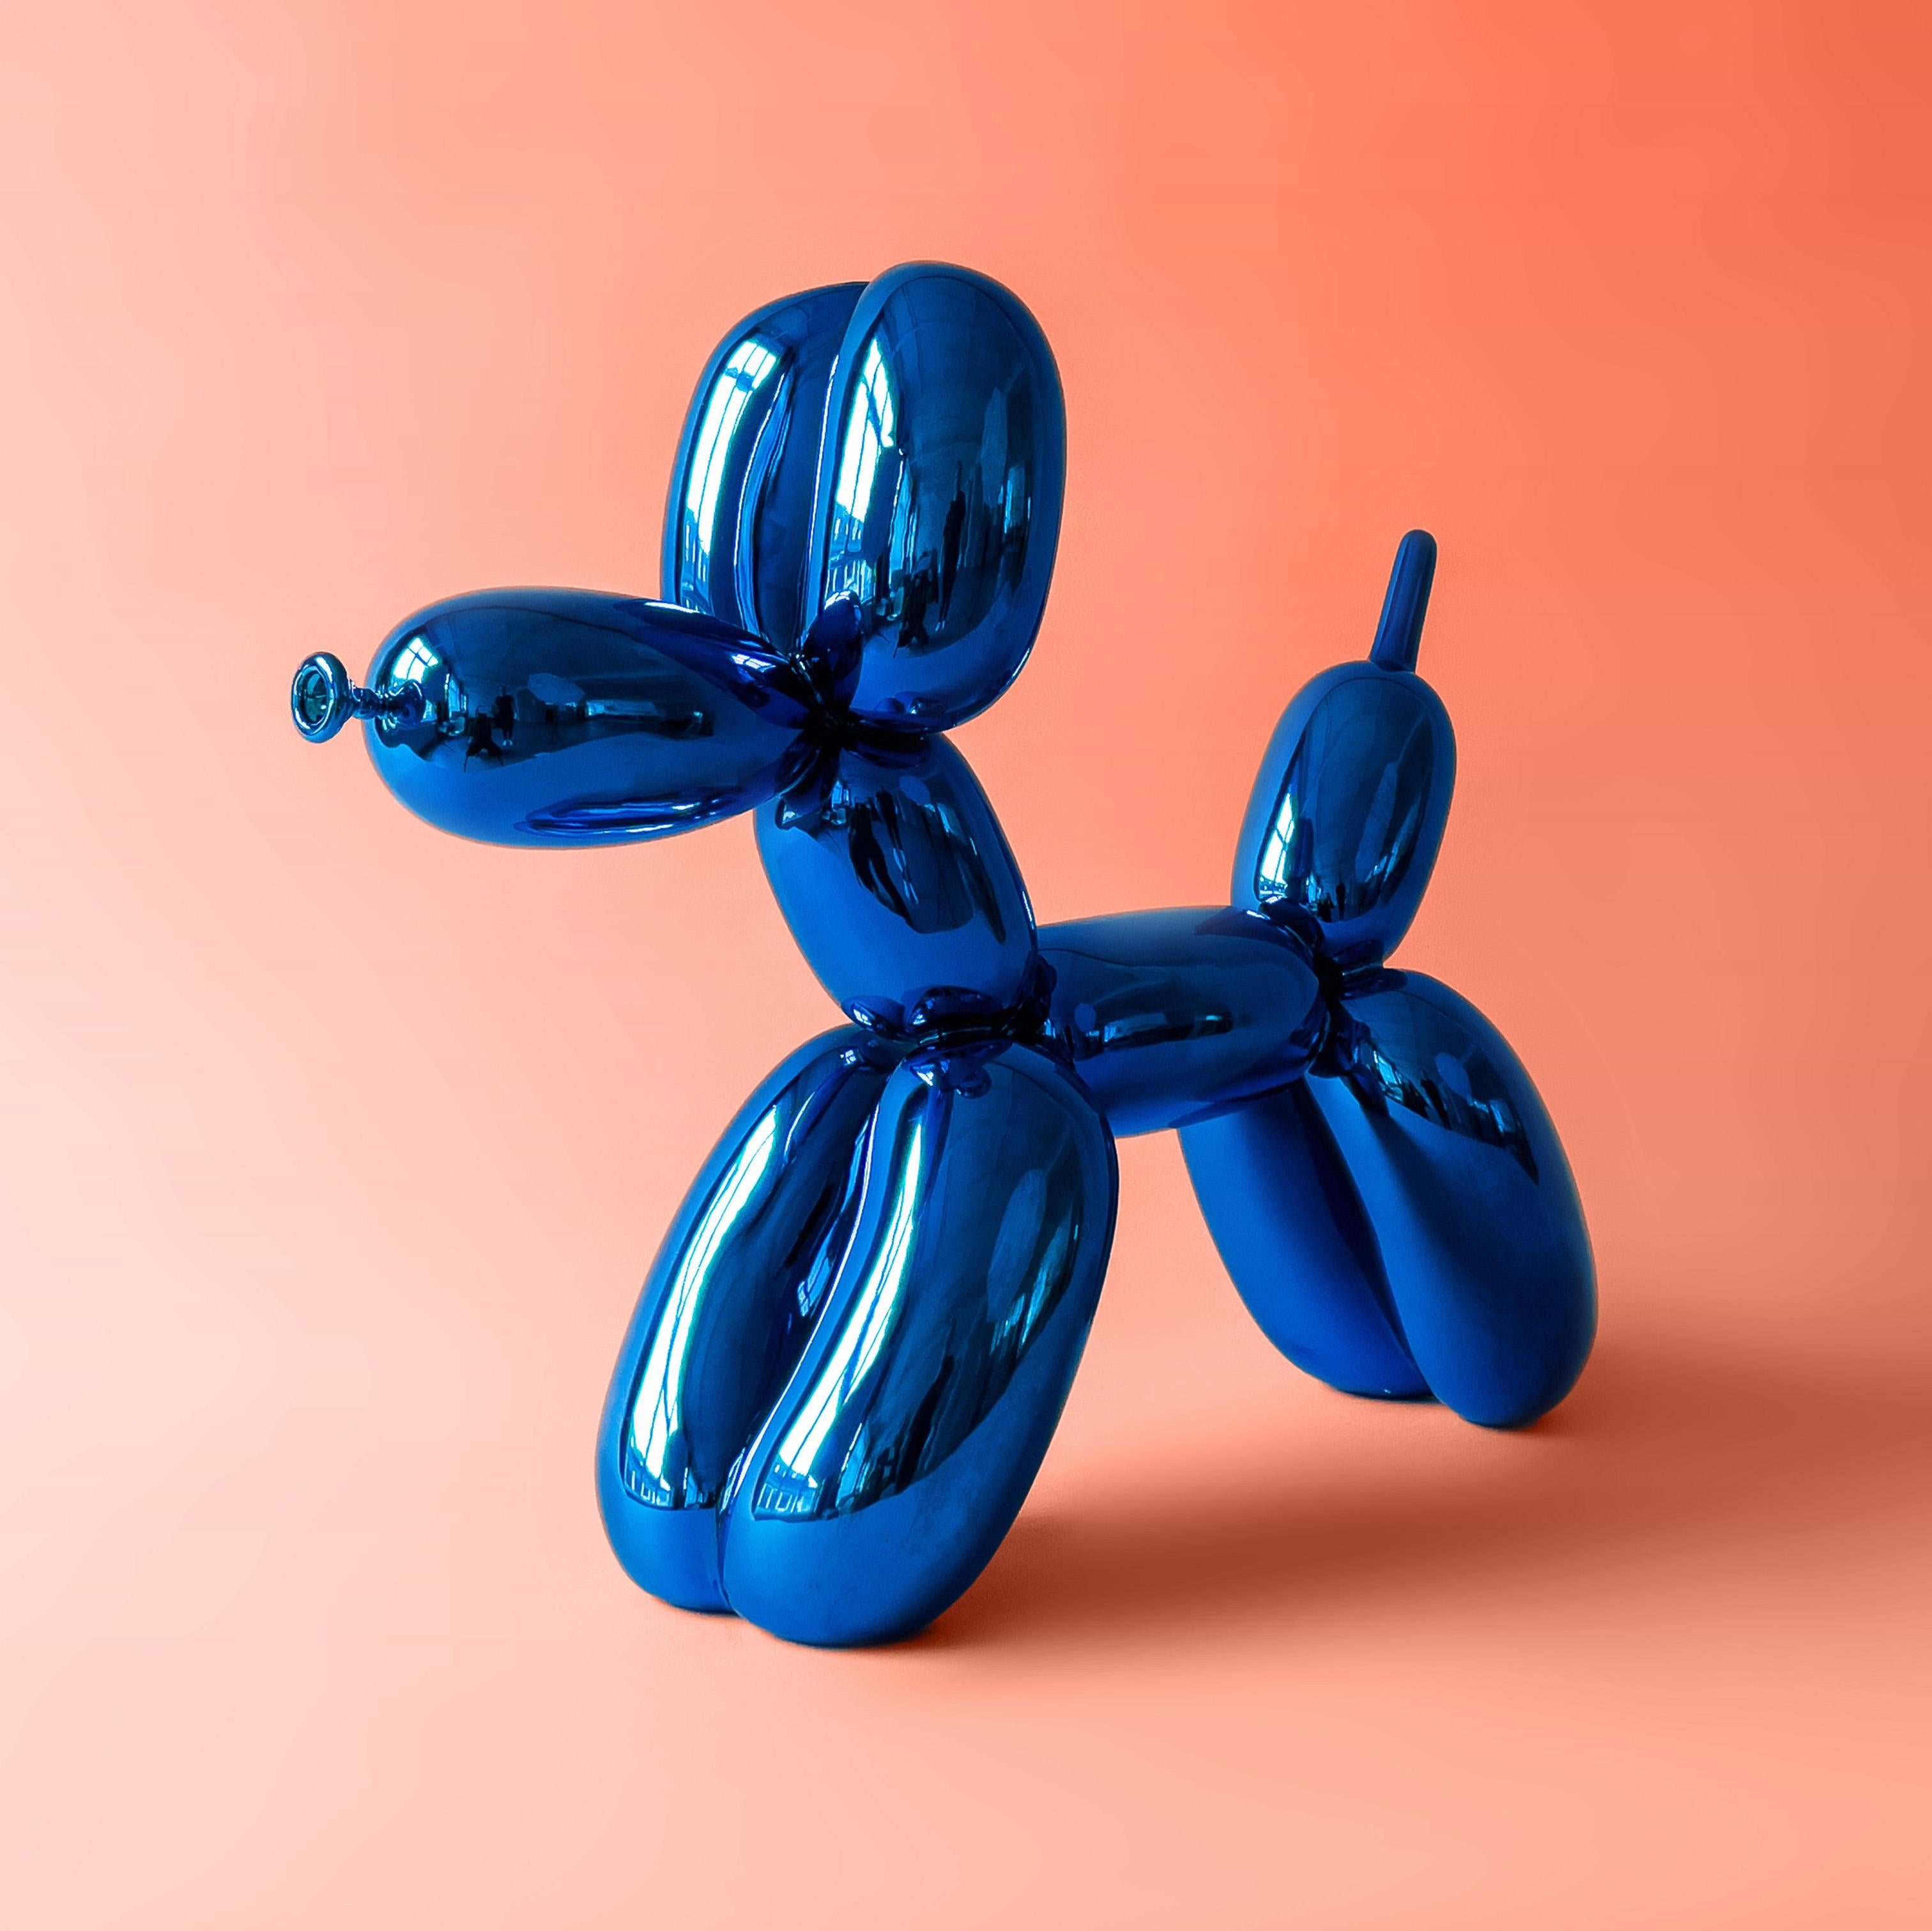 blue balloon dog sculpture